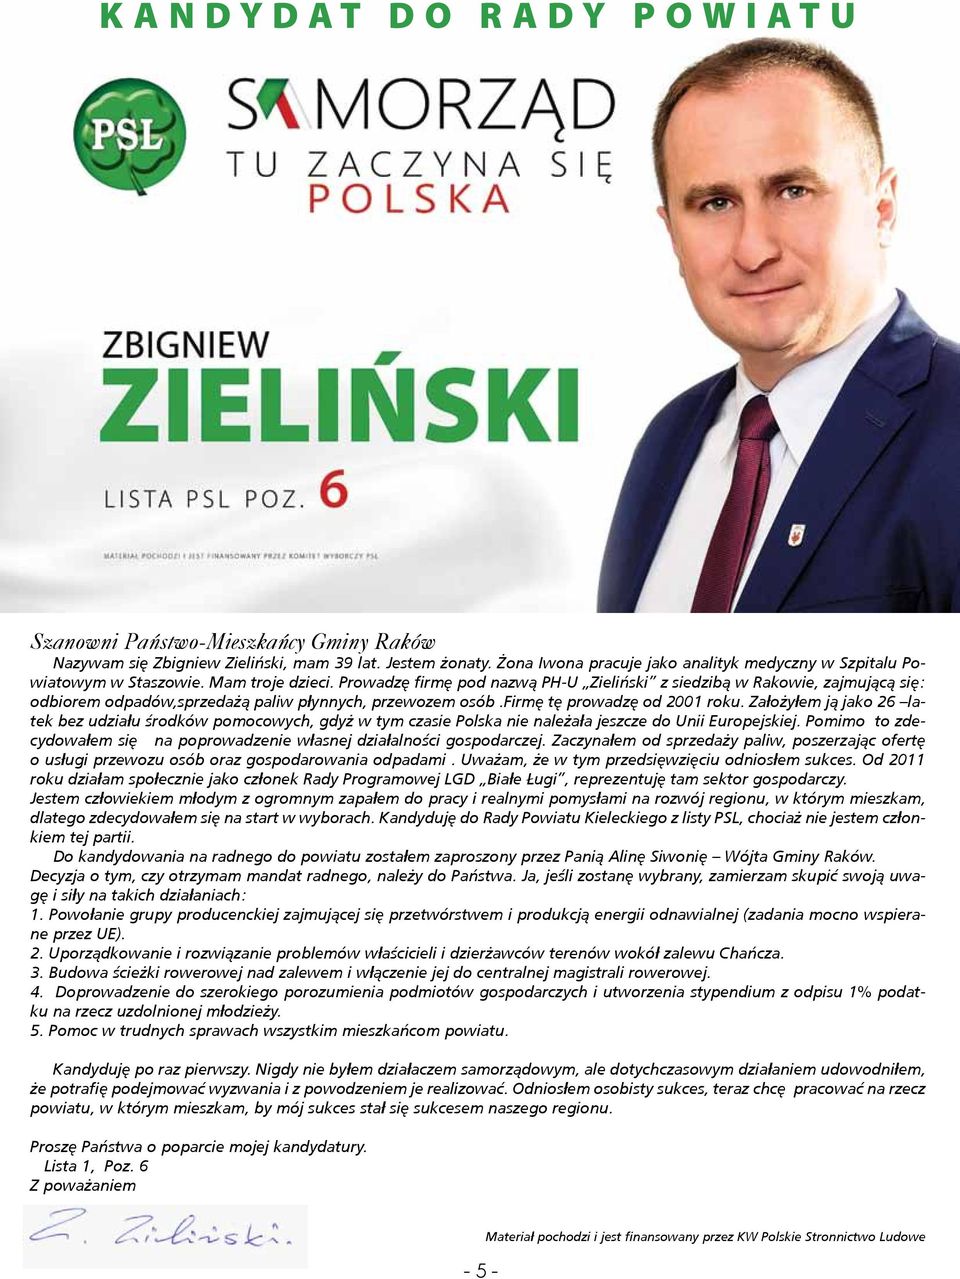 Prowadzę firmę pod nazwą PH-U Zieliński z siedzibą w Rakowie, zajmującą się: odbiorem odpadów,sprzedażą paliw płynnych, przewozem osób.firmę tę prowadzę od 2001 roku.